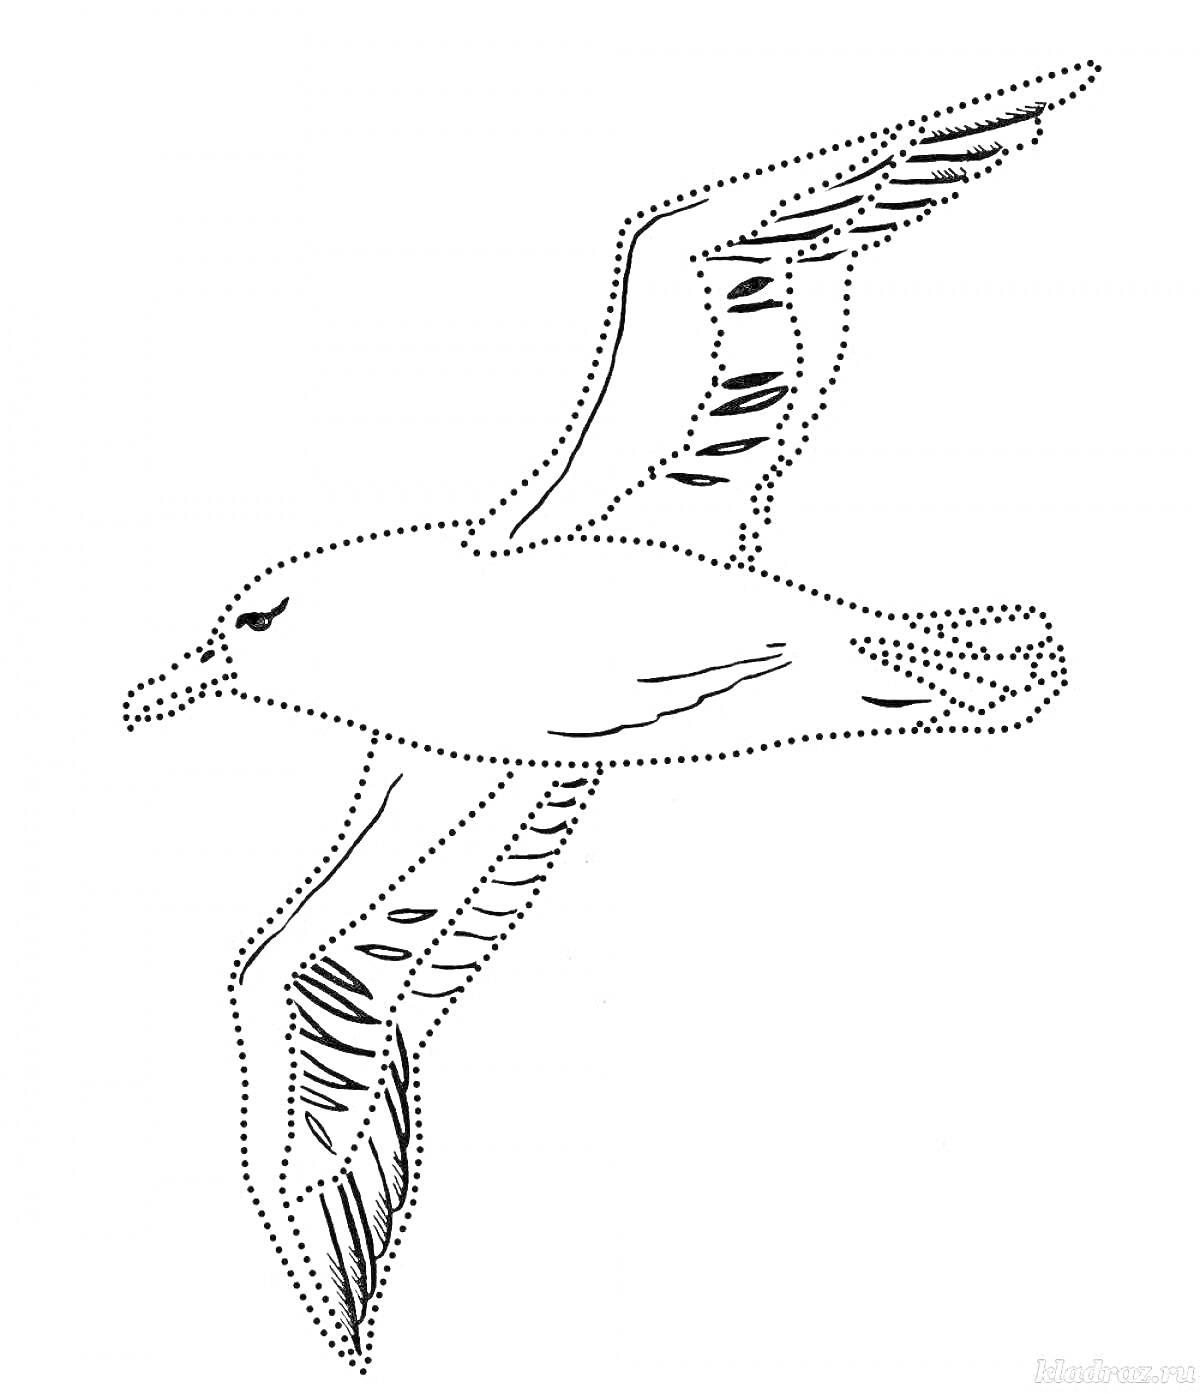 Раскраска Летящий альбатрос, изображение контура птицы с деталями крыльев